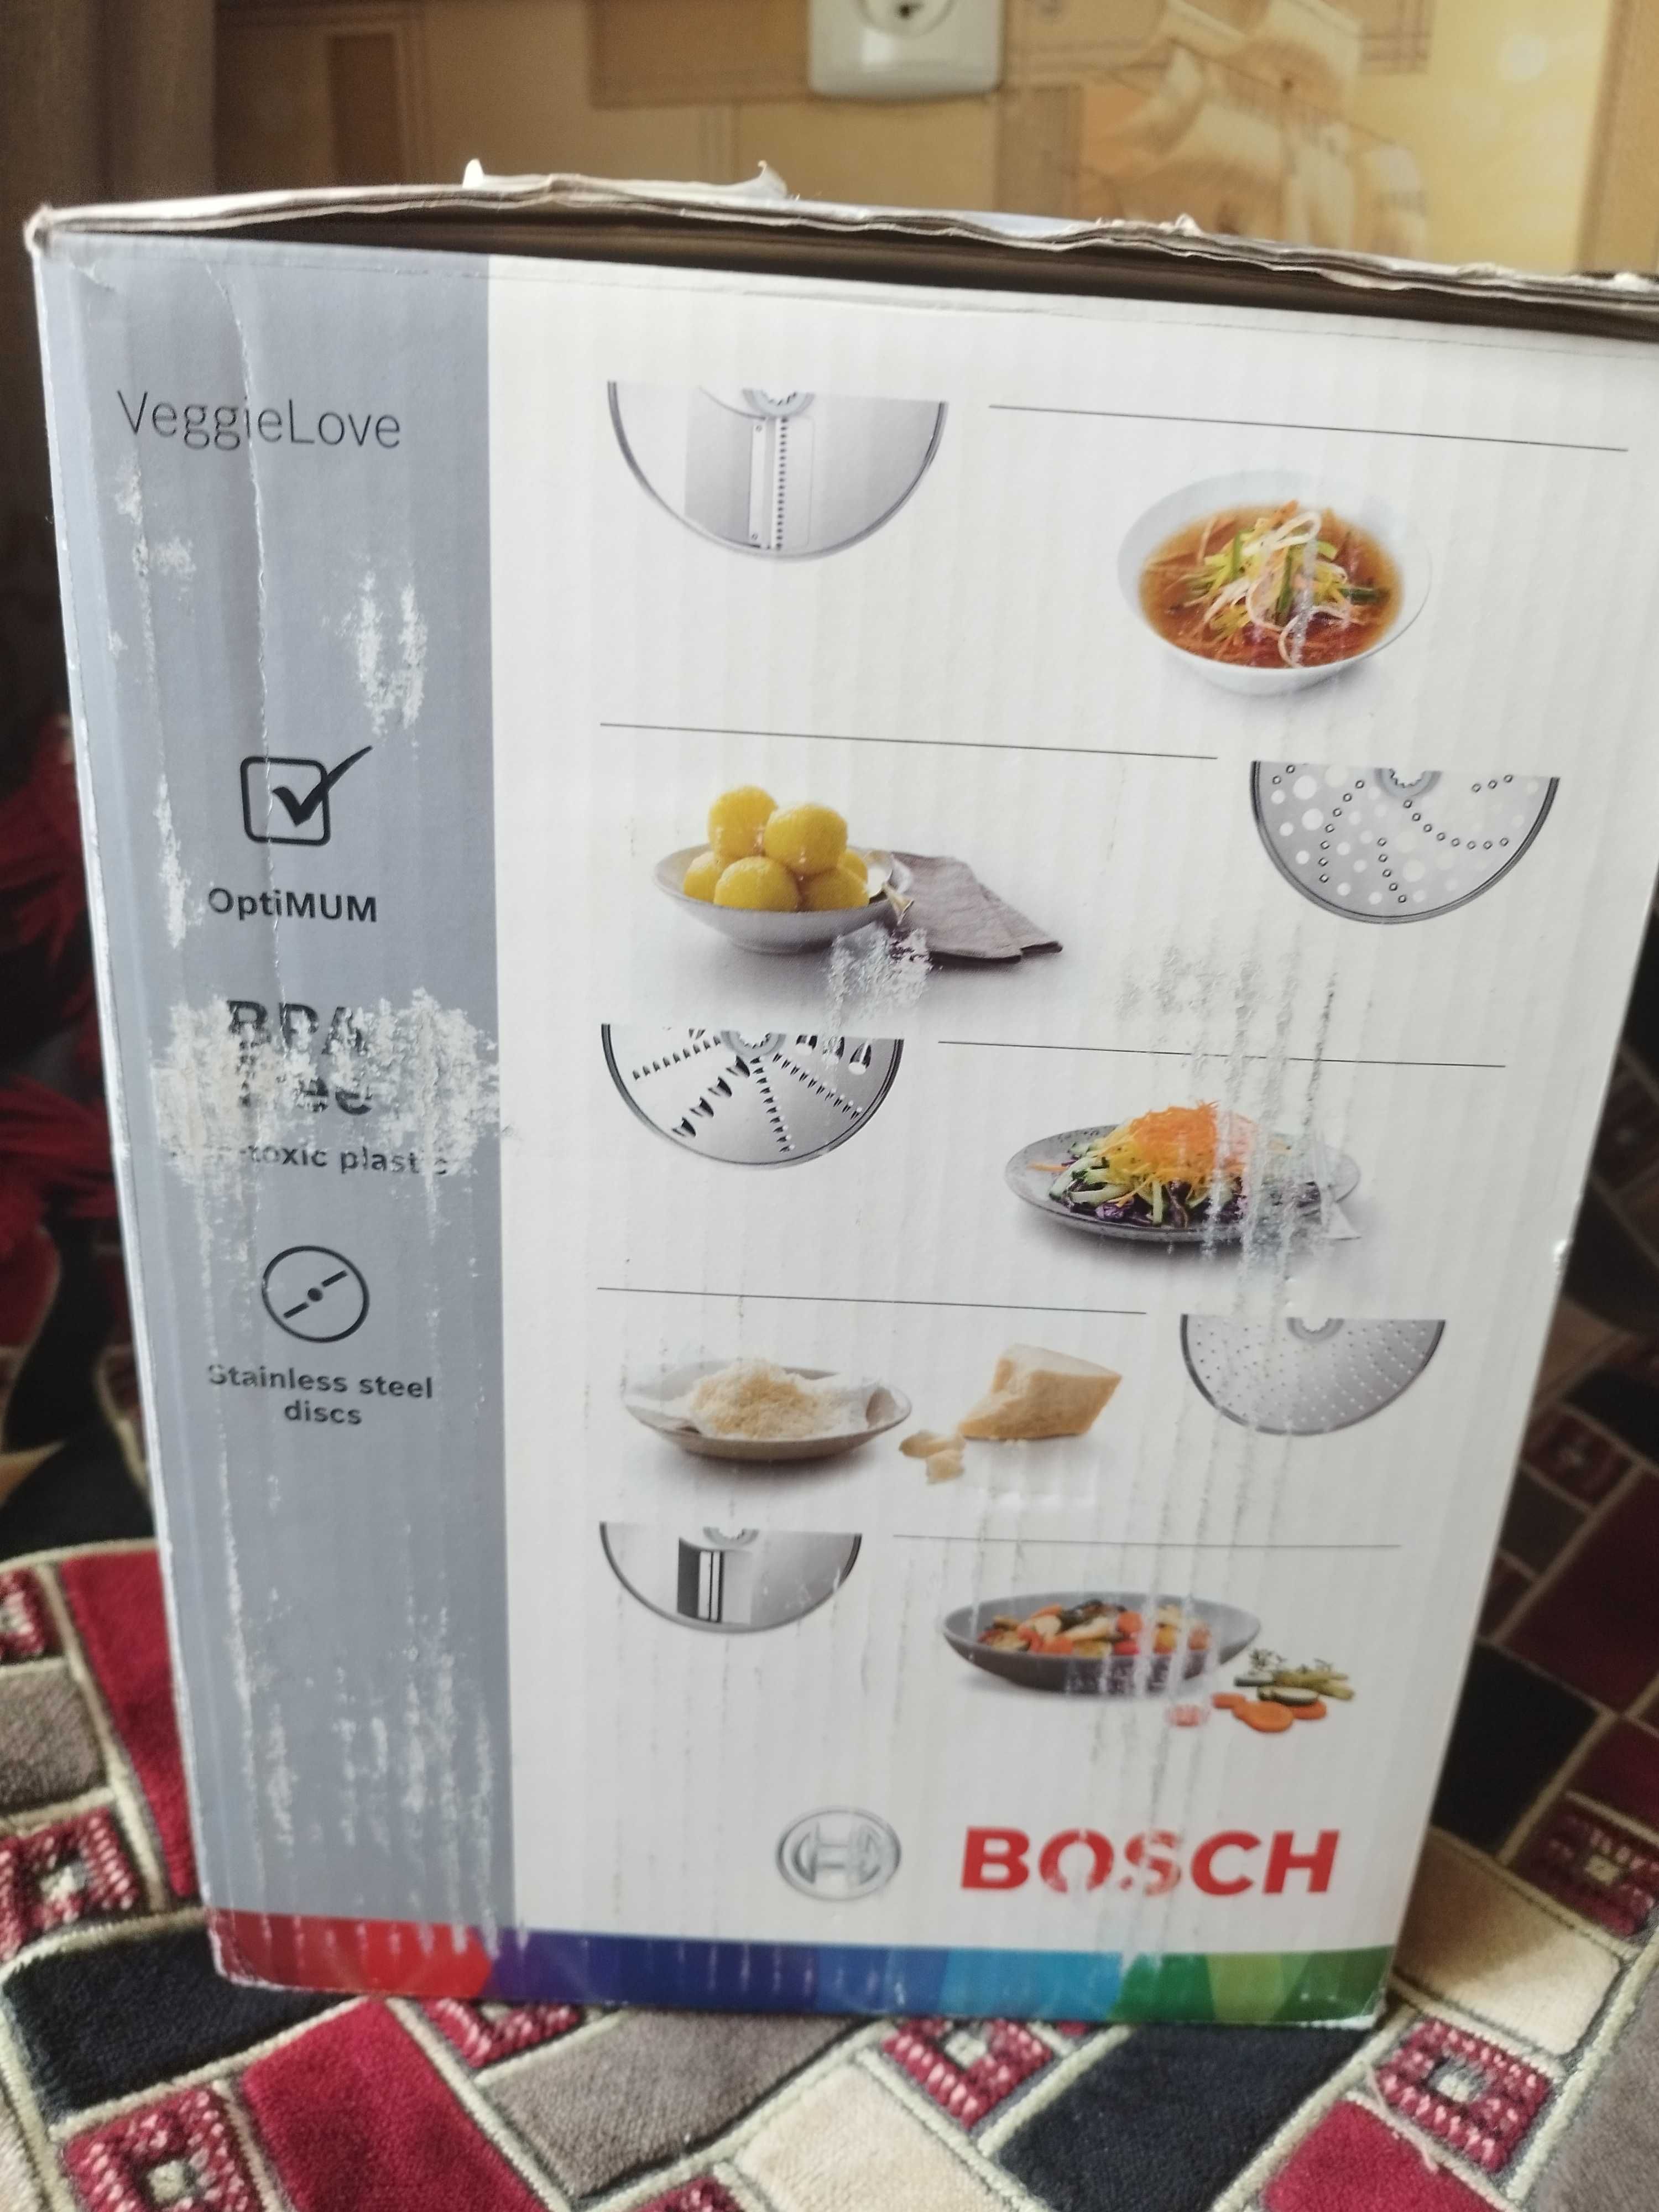 Комплект насадок Bosch VeggieLove MUZ9VL1